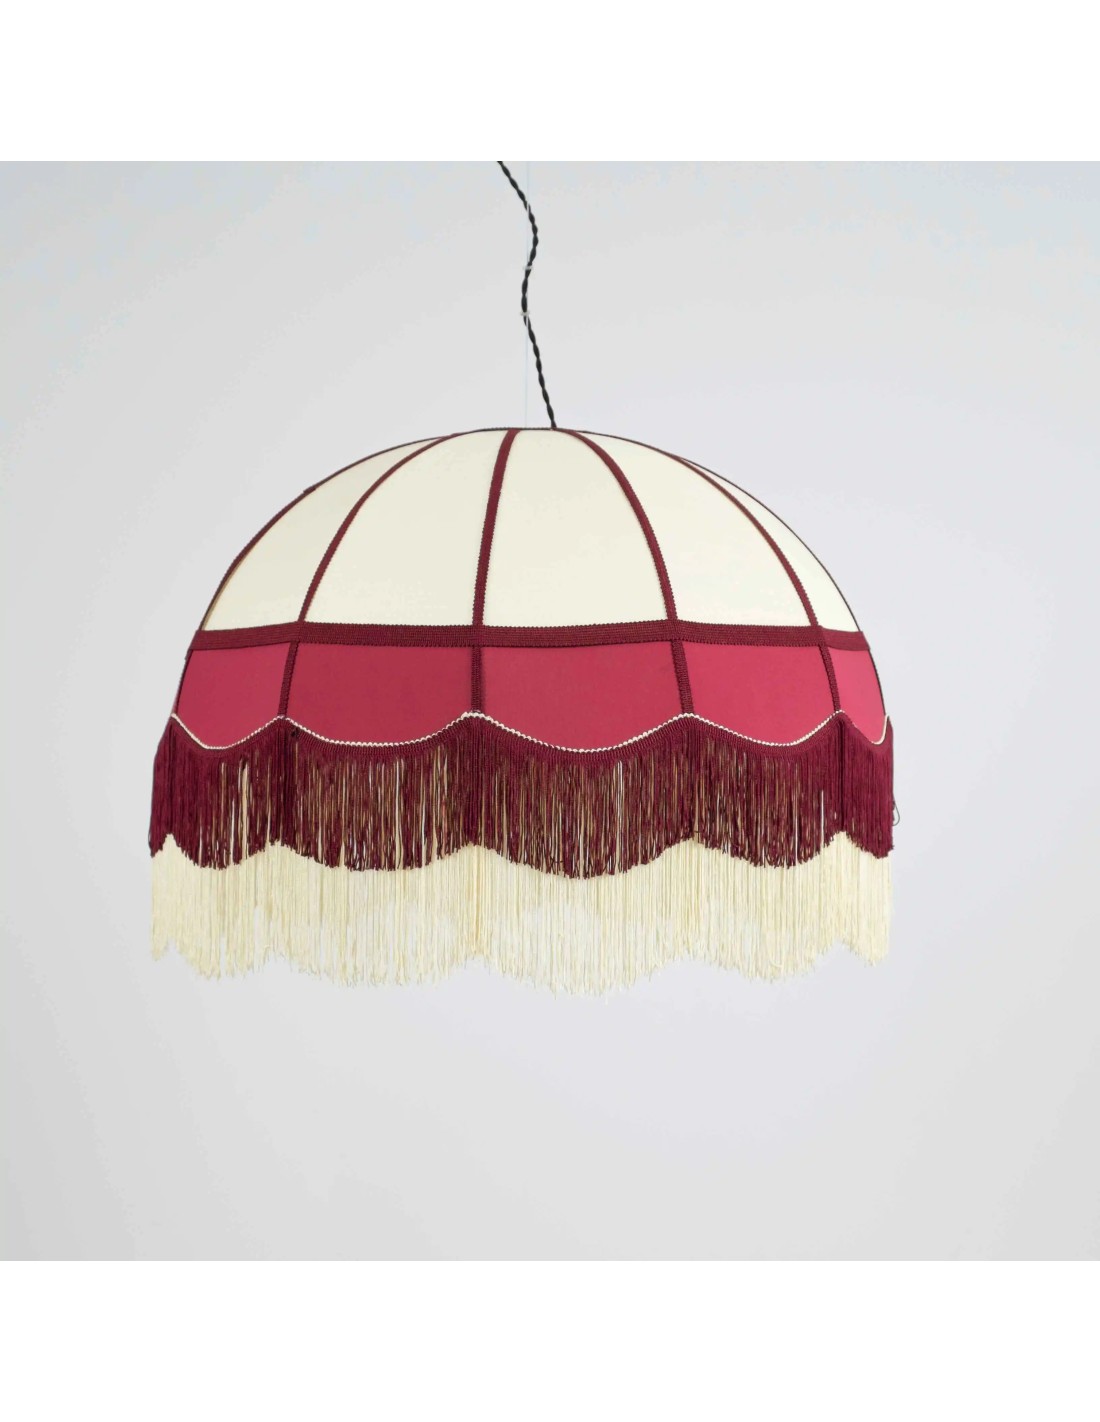 lámpara de techo colgante de fácil instalación que es perfecta para iluminar salones